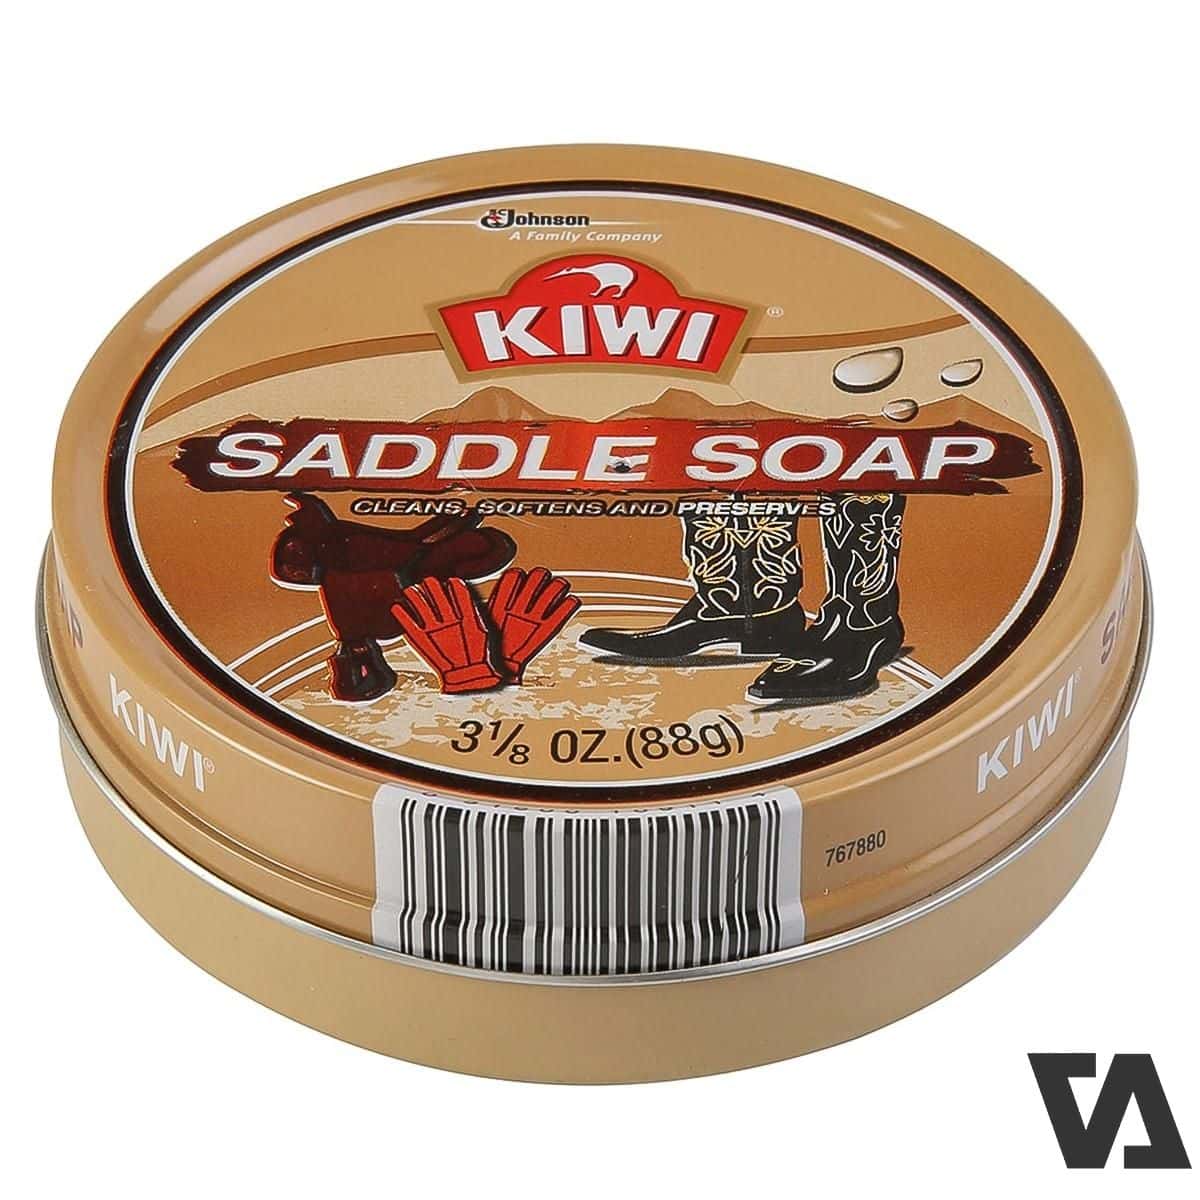 Kiwi Saddle Soap sản phẩm giúp bảo vệ tối đa bề mặt các sản phẩm da.